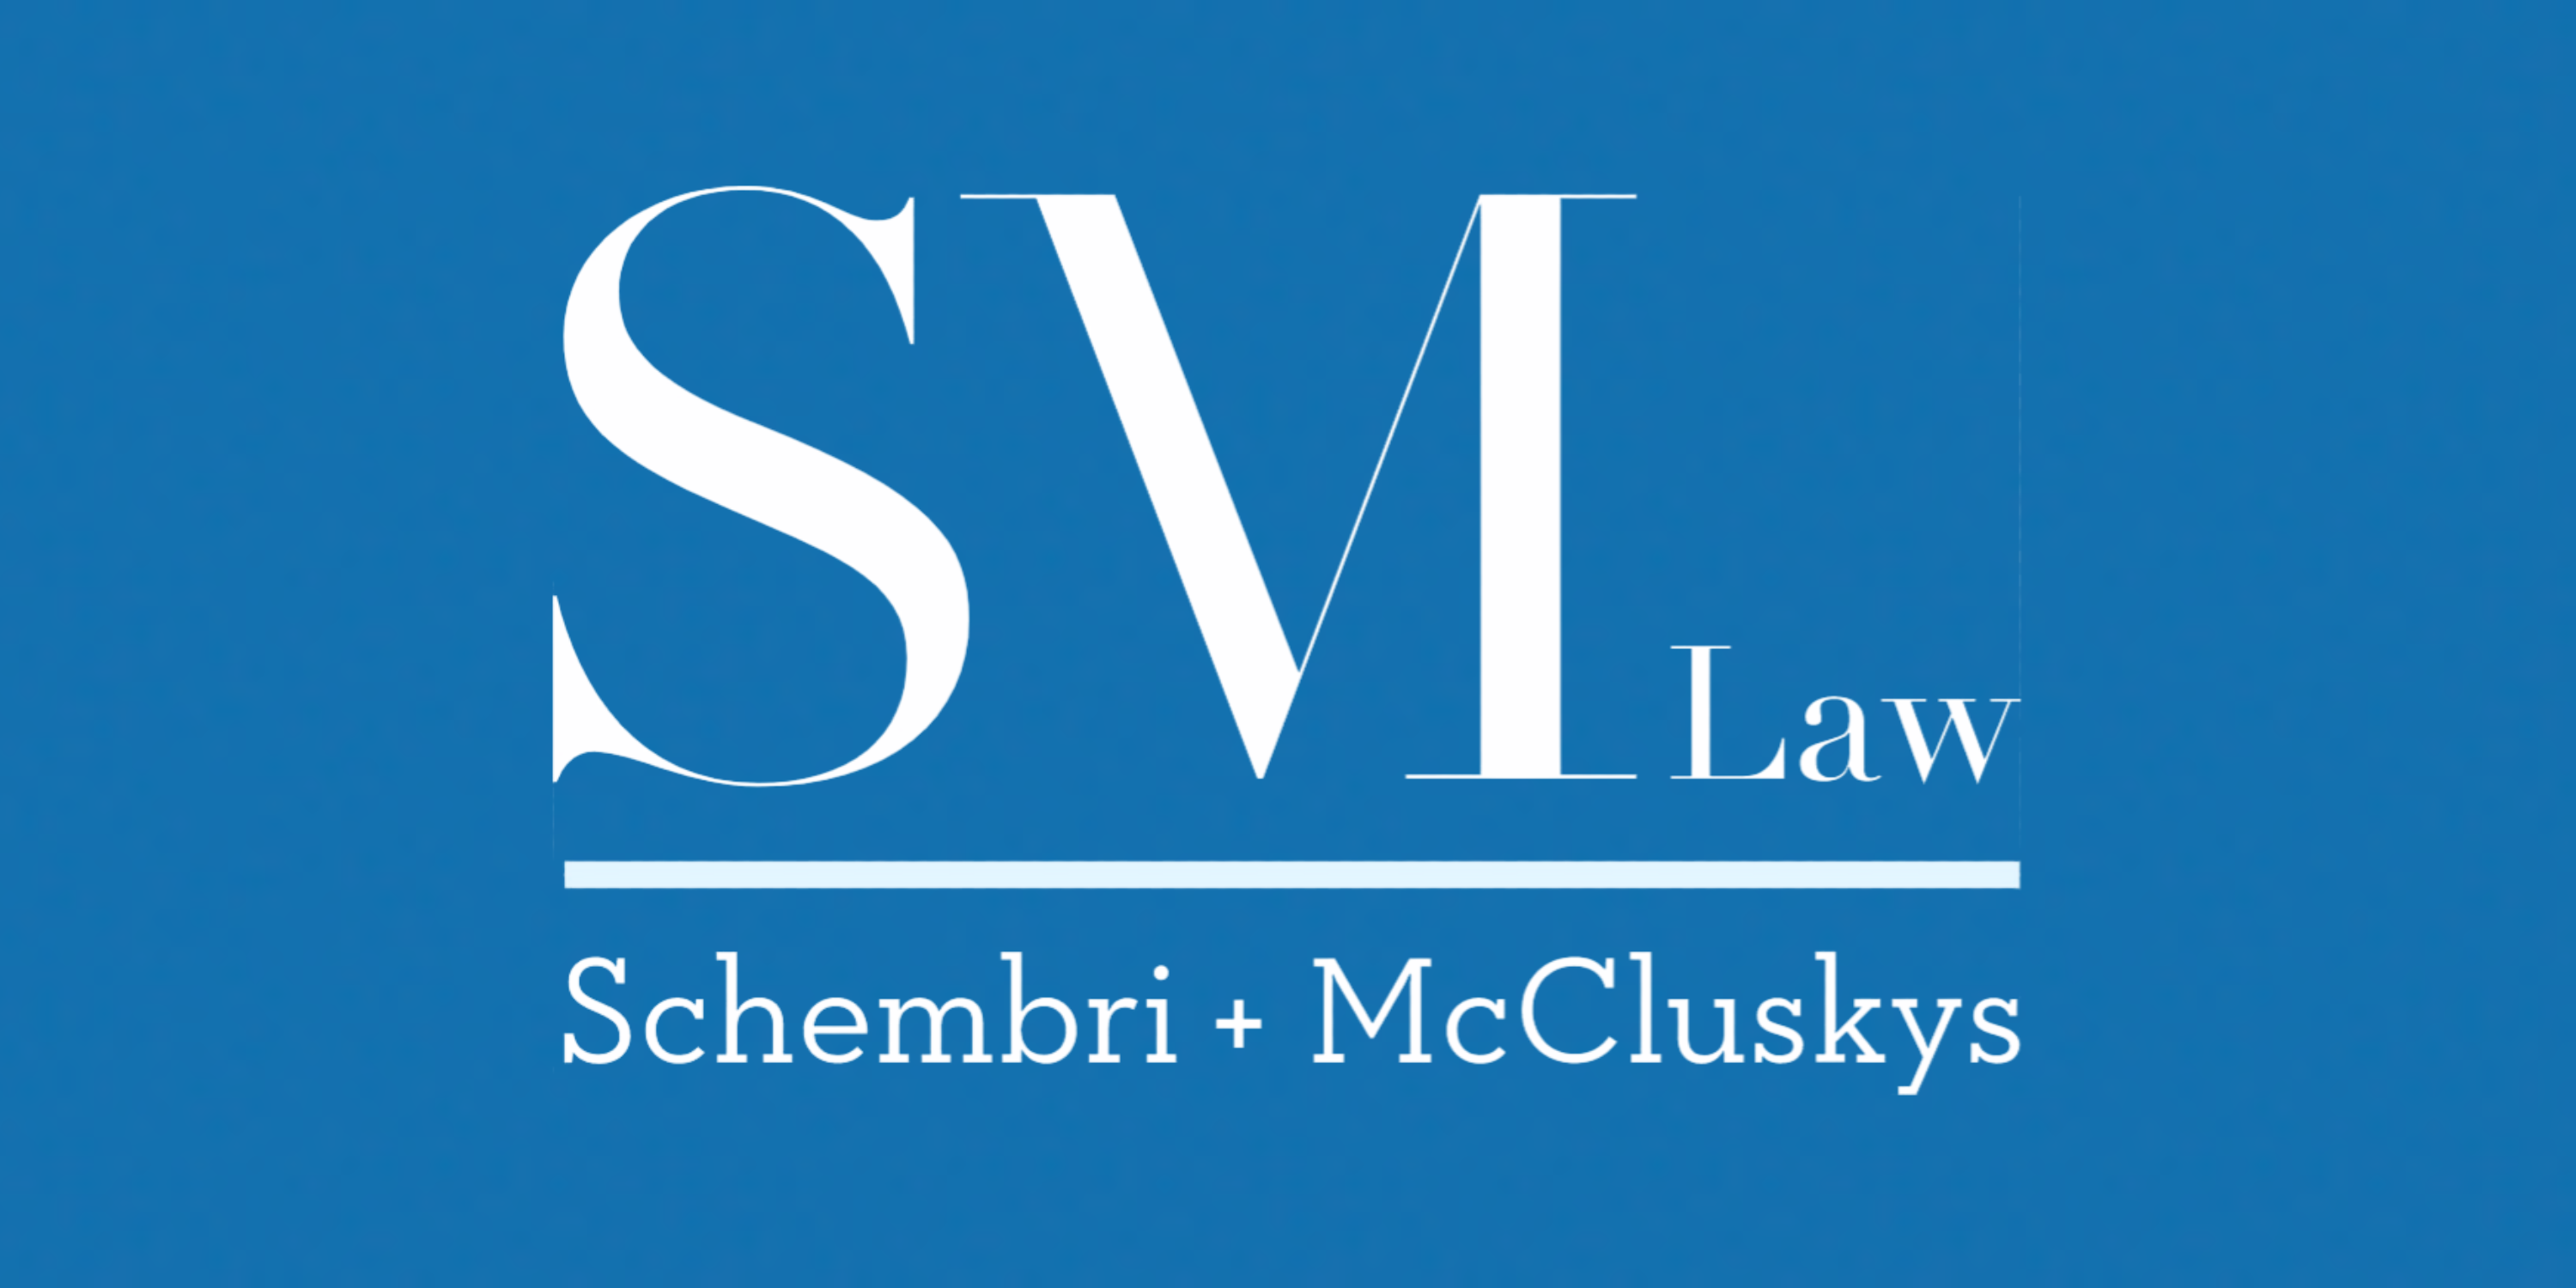 Schembri + McCluskys Lawyers